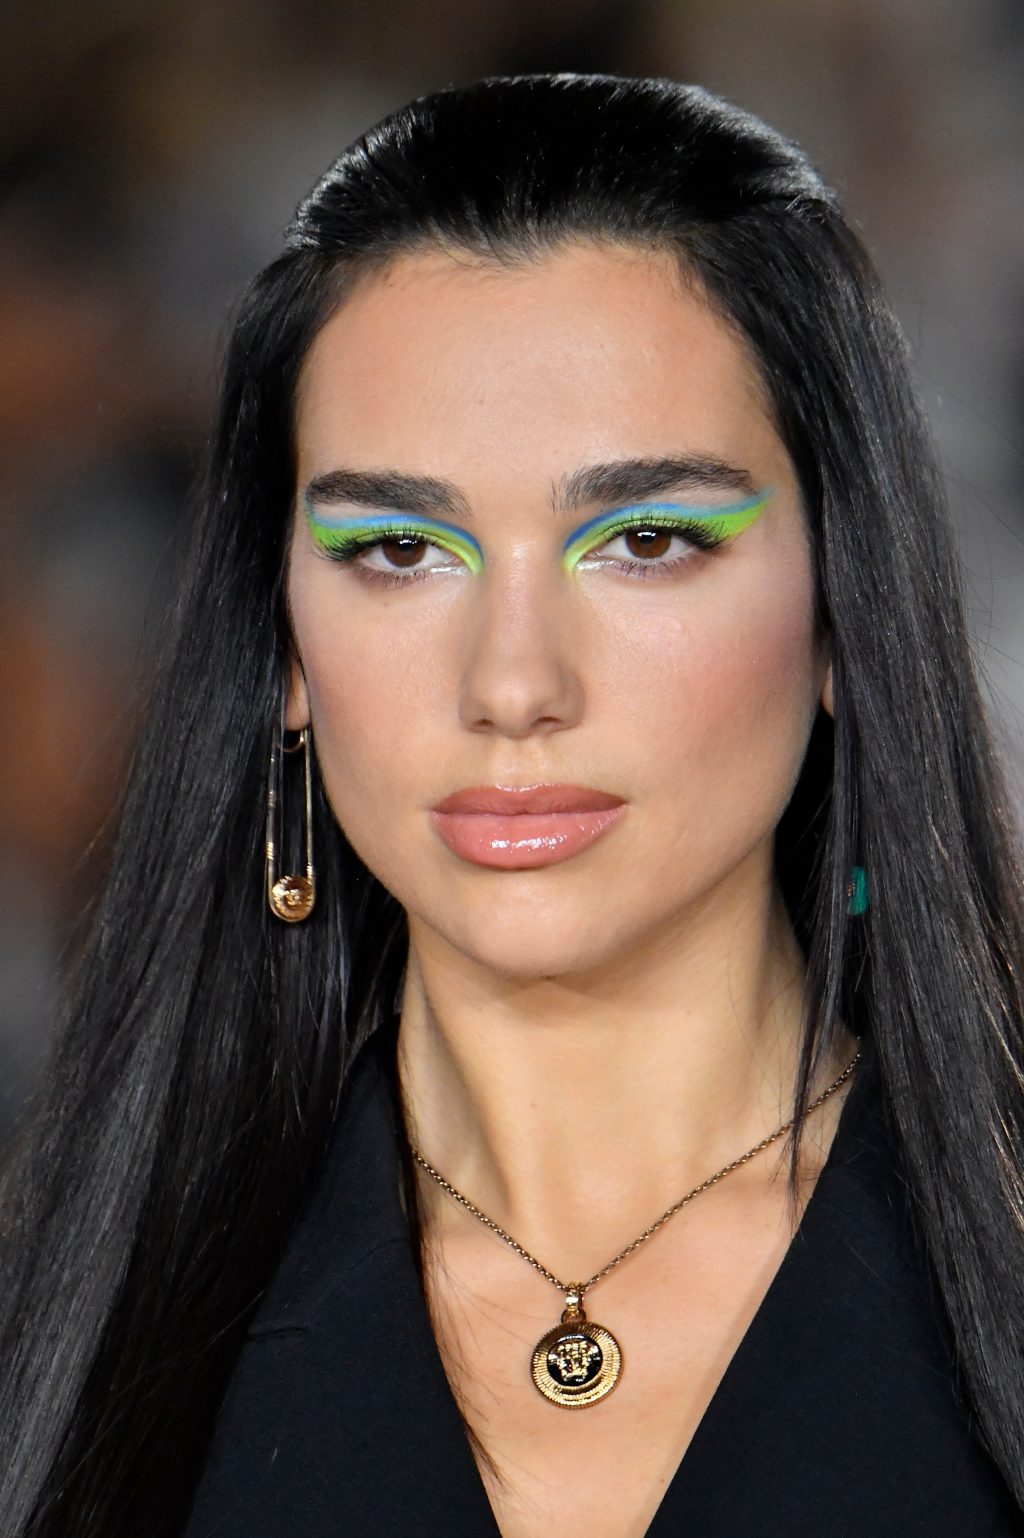 Phong cách mắt mèo với những lớp màu neon trong show diễn của Versace.